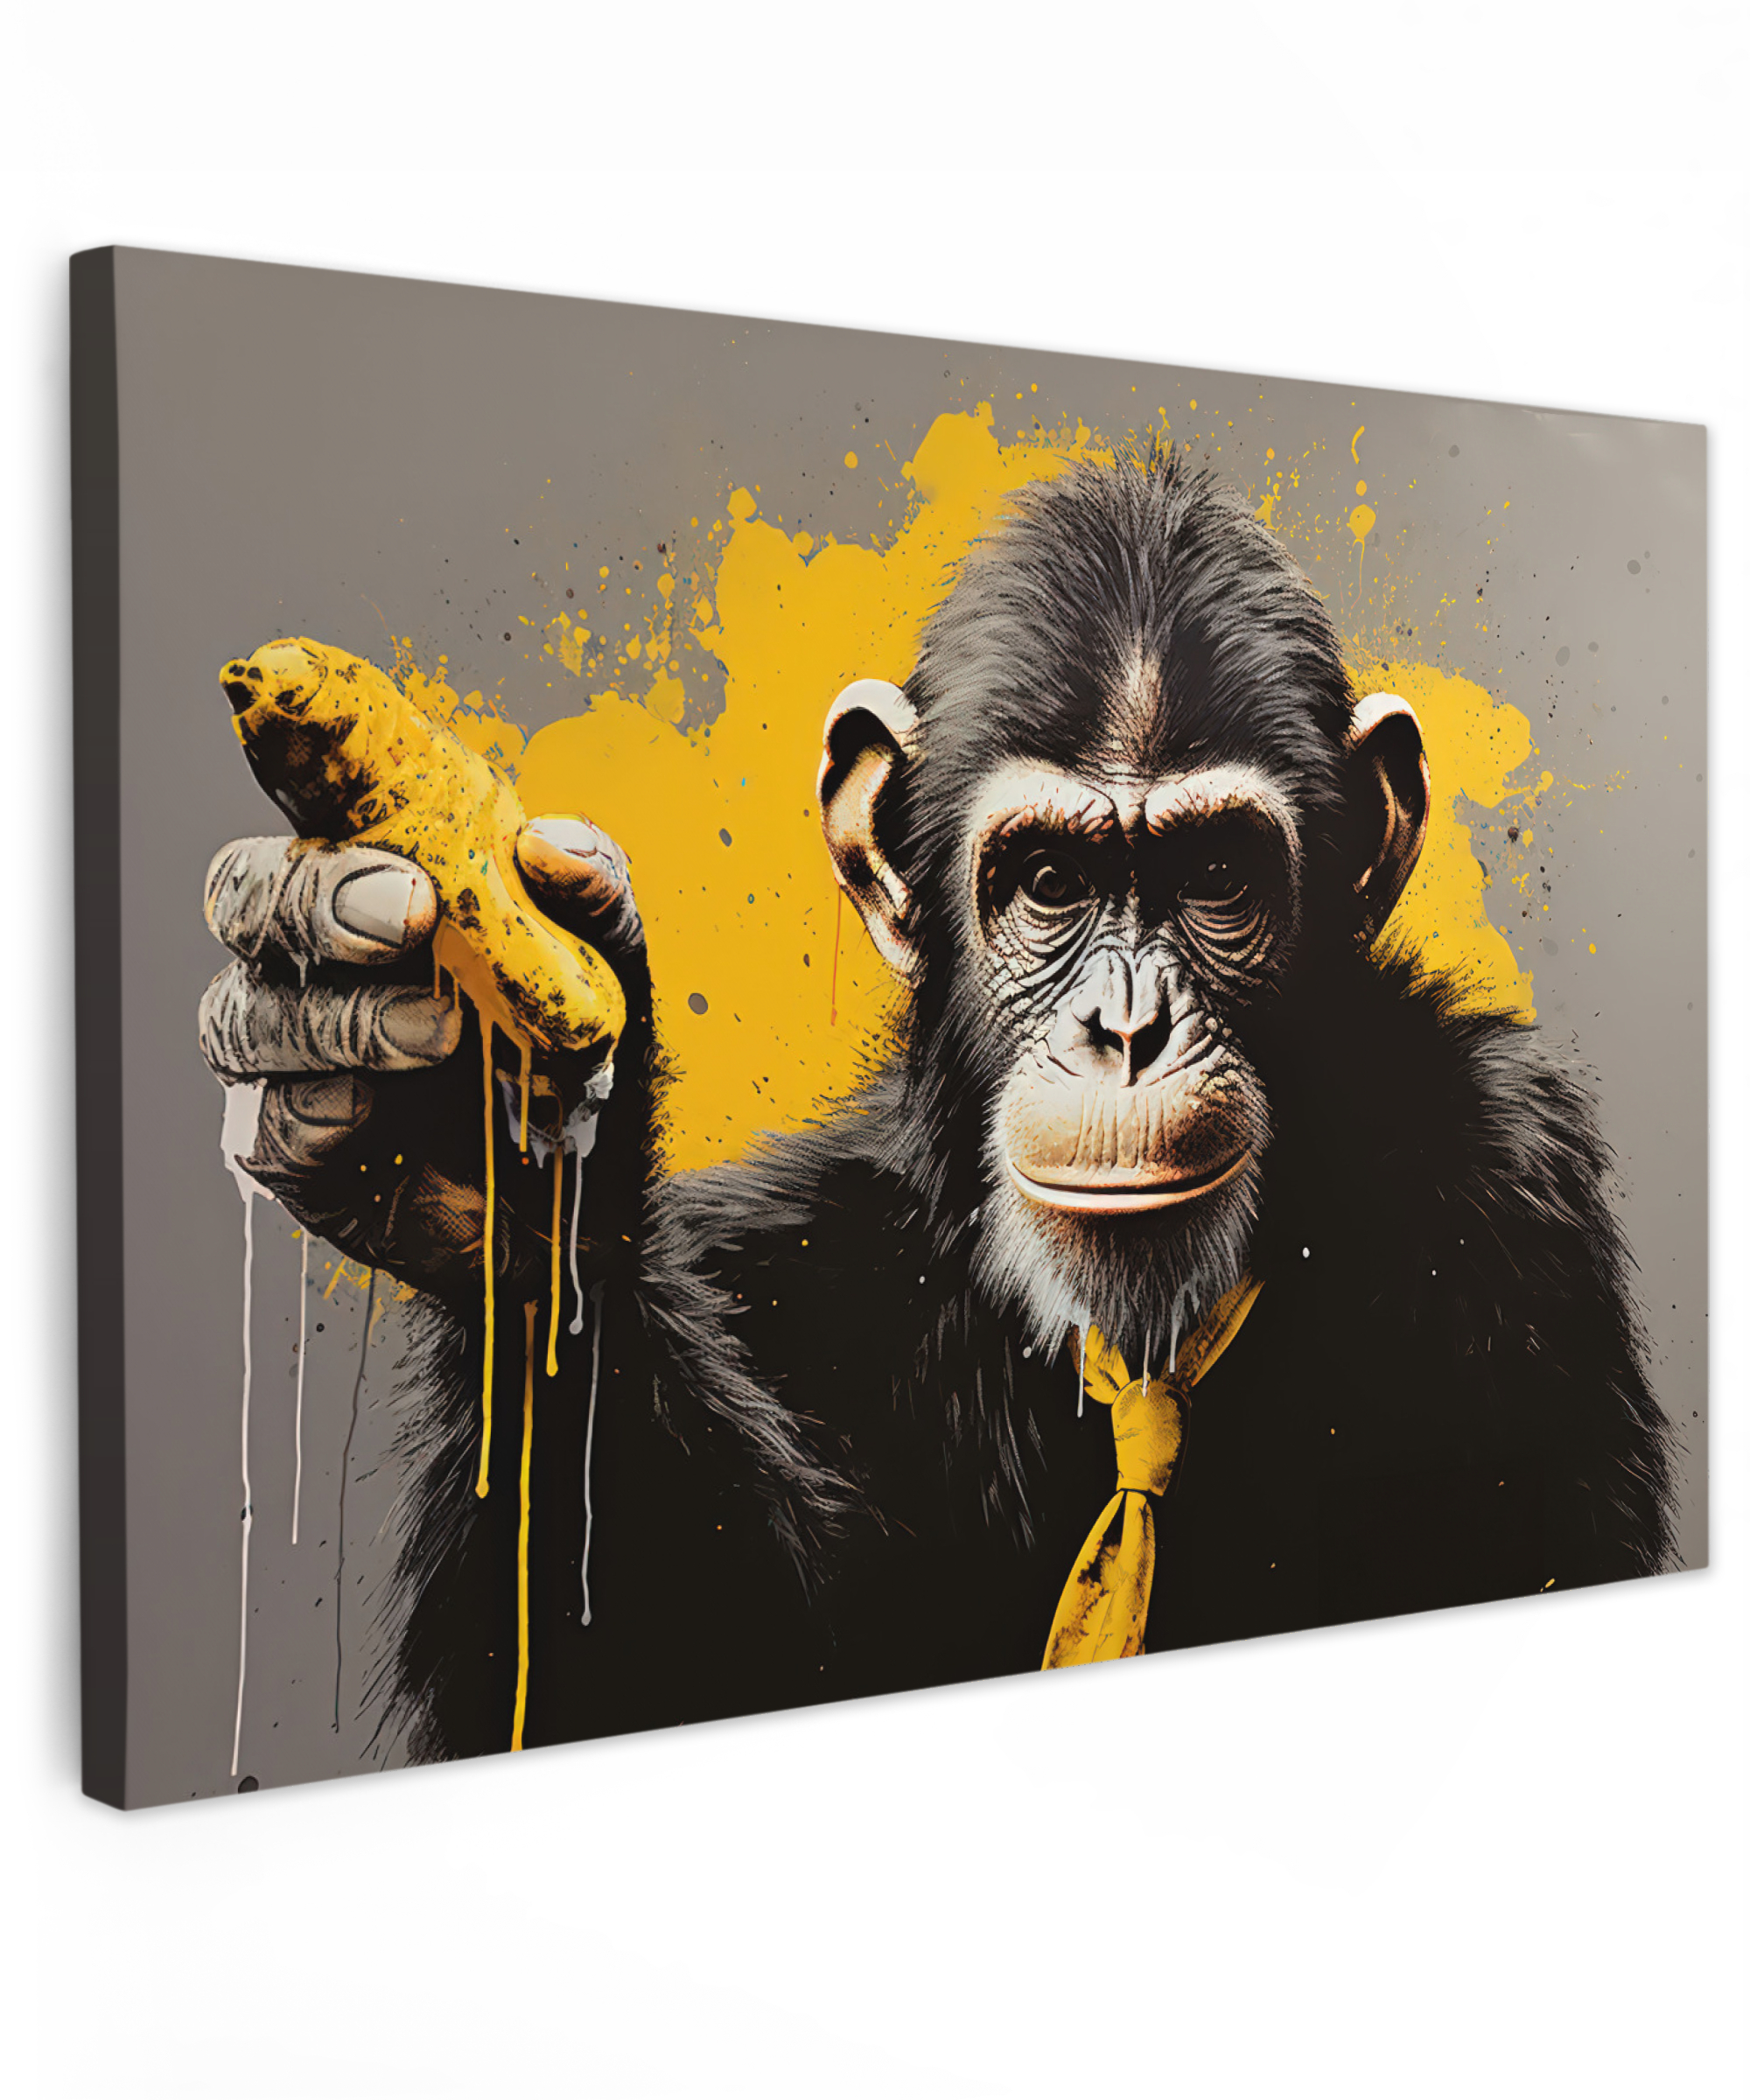 Tableau sur toile - Singe - Chimpanzé - Banane - Jaune - Animaux - Cravate